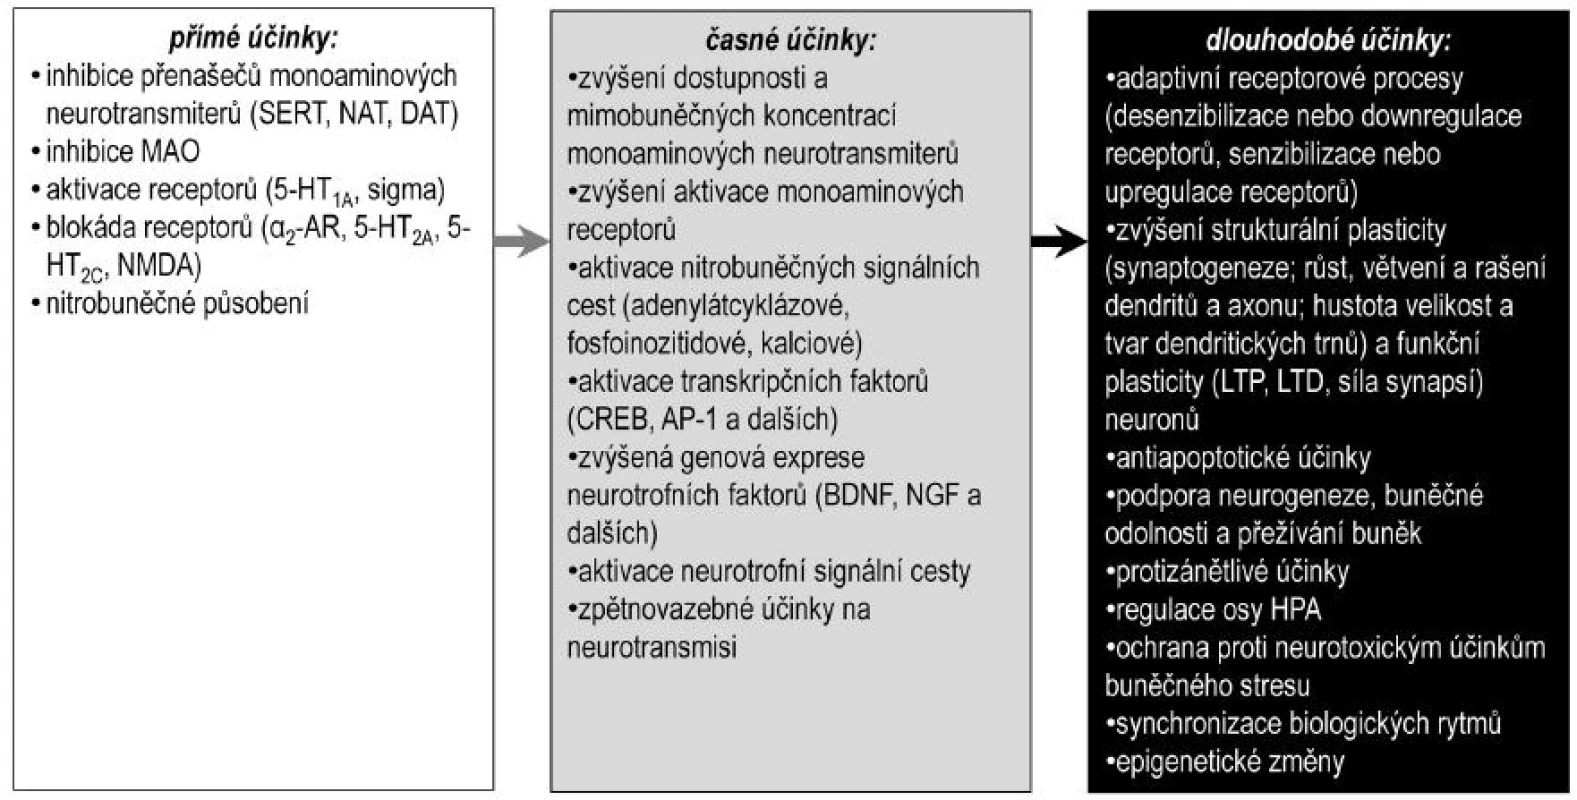 Předpokládaný sled účinků antidepresiv
BDNF – mozkový neurotrofní faktor, CREB – transkripční faktor aktivovaný v odezvě na zvýšení hladin cyklického adenozinmonofosfátu, DAT – přenašeč pro dopamin, NAT – přenašeč pro noradrenalin, HPA – osa hypotalamus-hypofýza-kůra nadledvin, NGF – nervový růstový faktor, LTD – dlouhodobá deprese, LTP – dlouhodobá potenciace, SERT – přenašeč pro serotonin